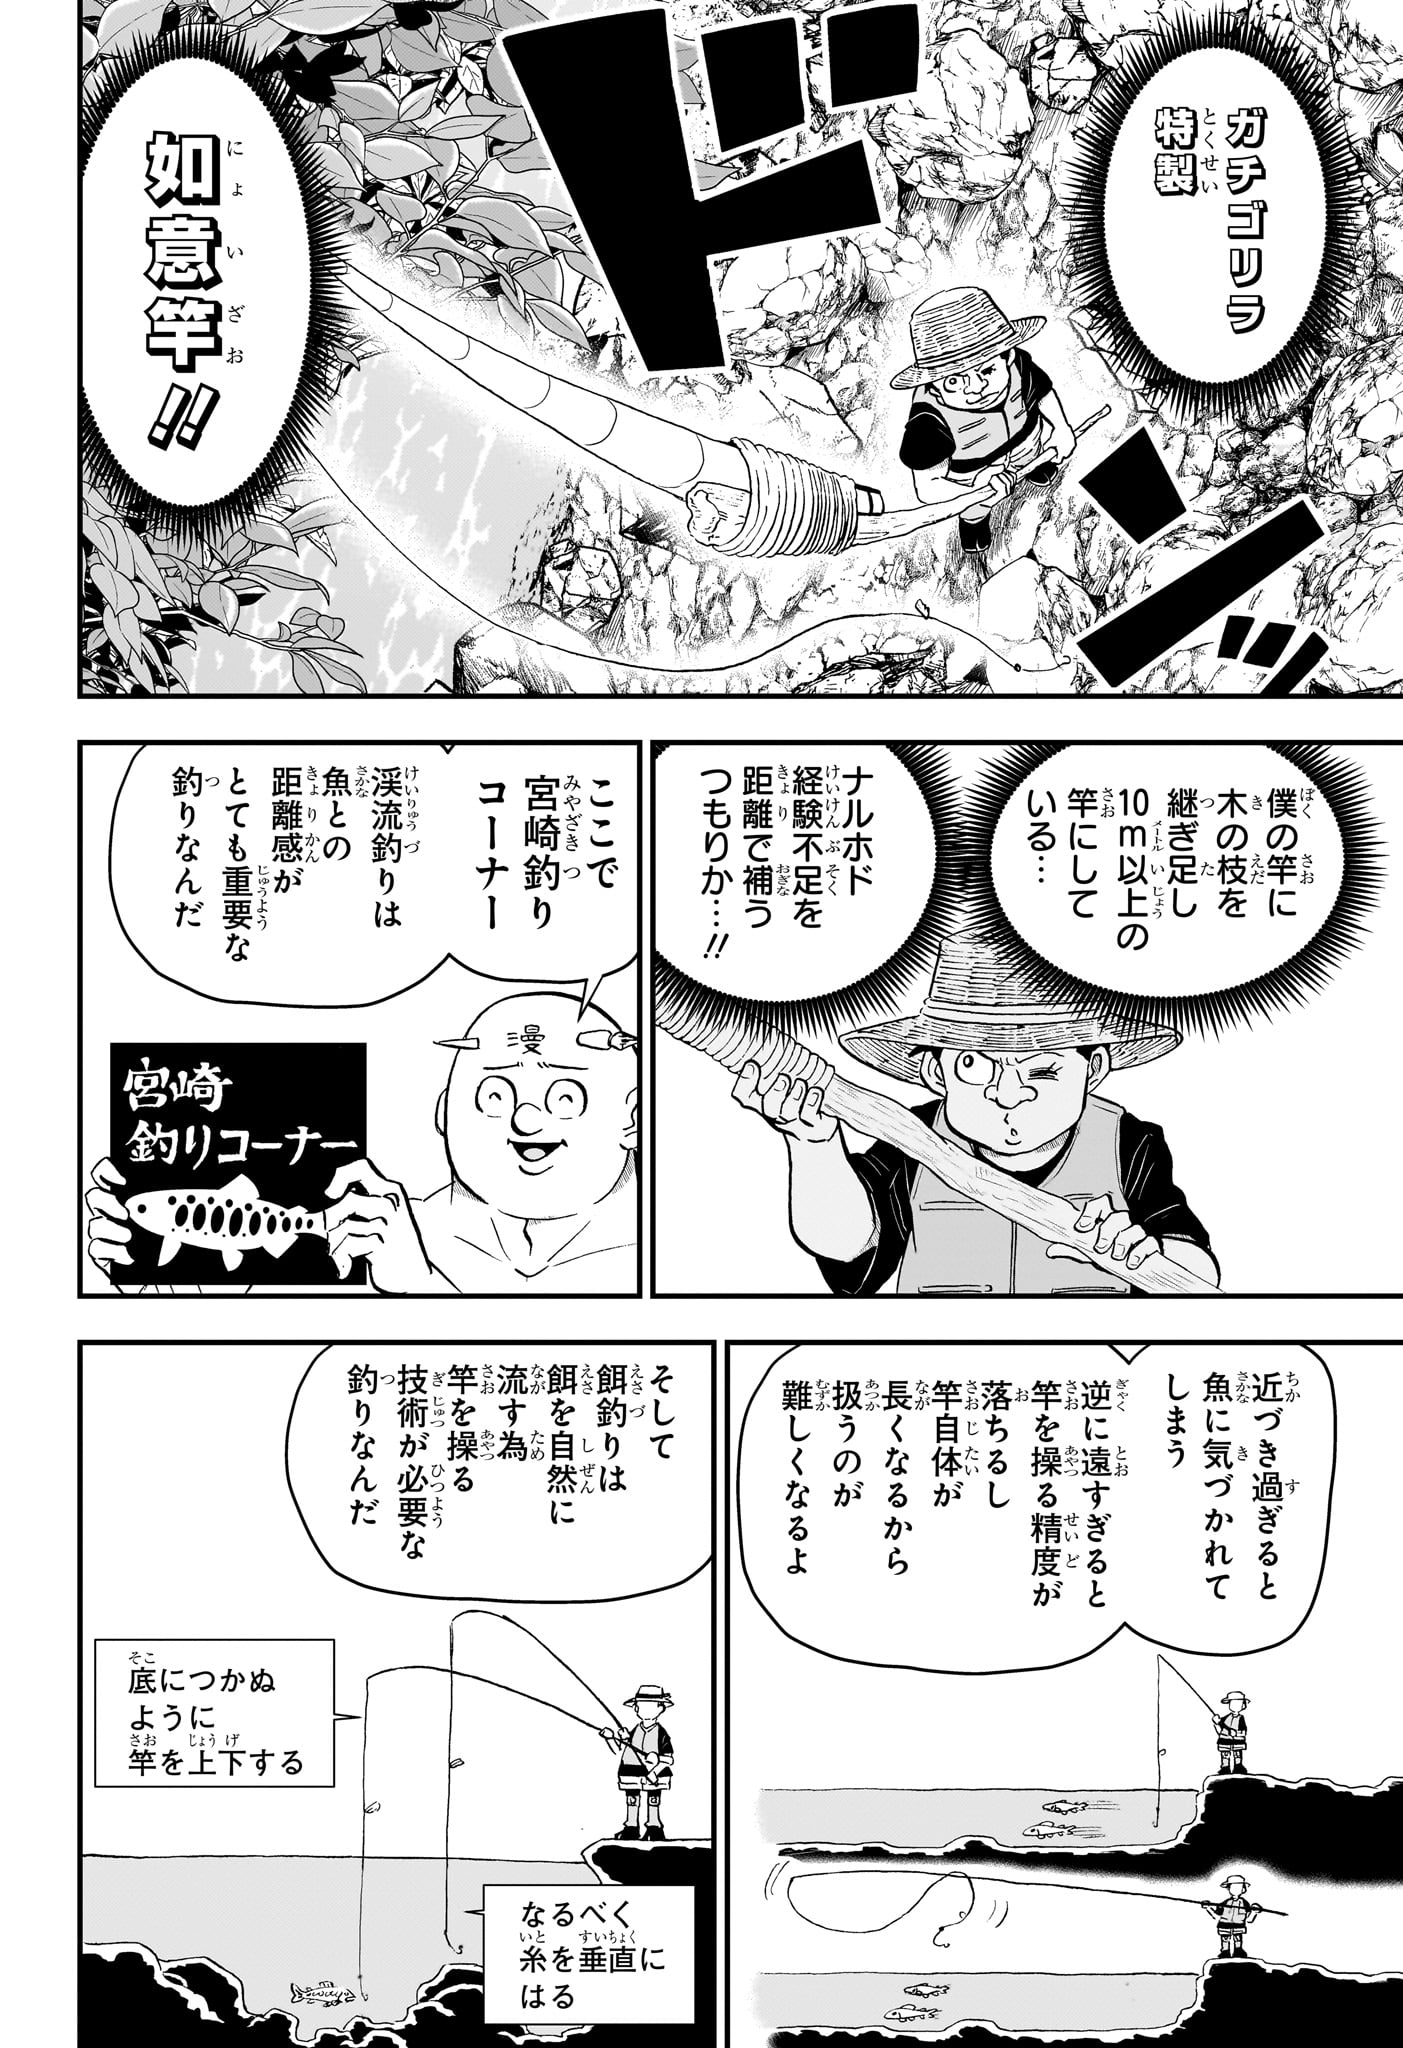 Boku to Roboko - Chapter 188 - Page 5